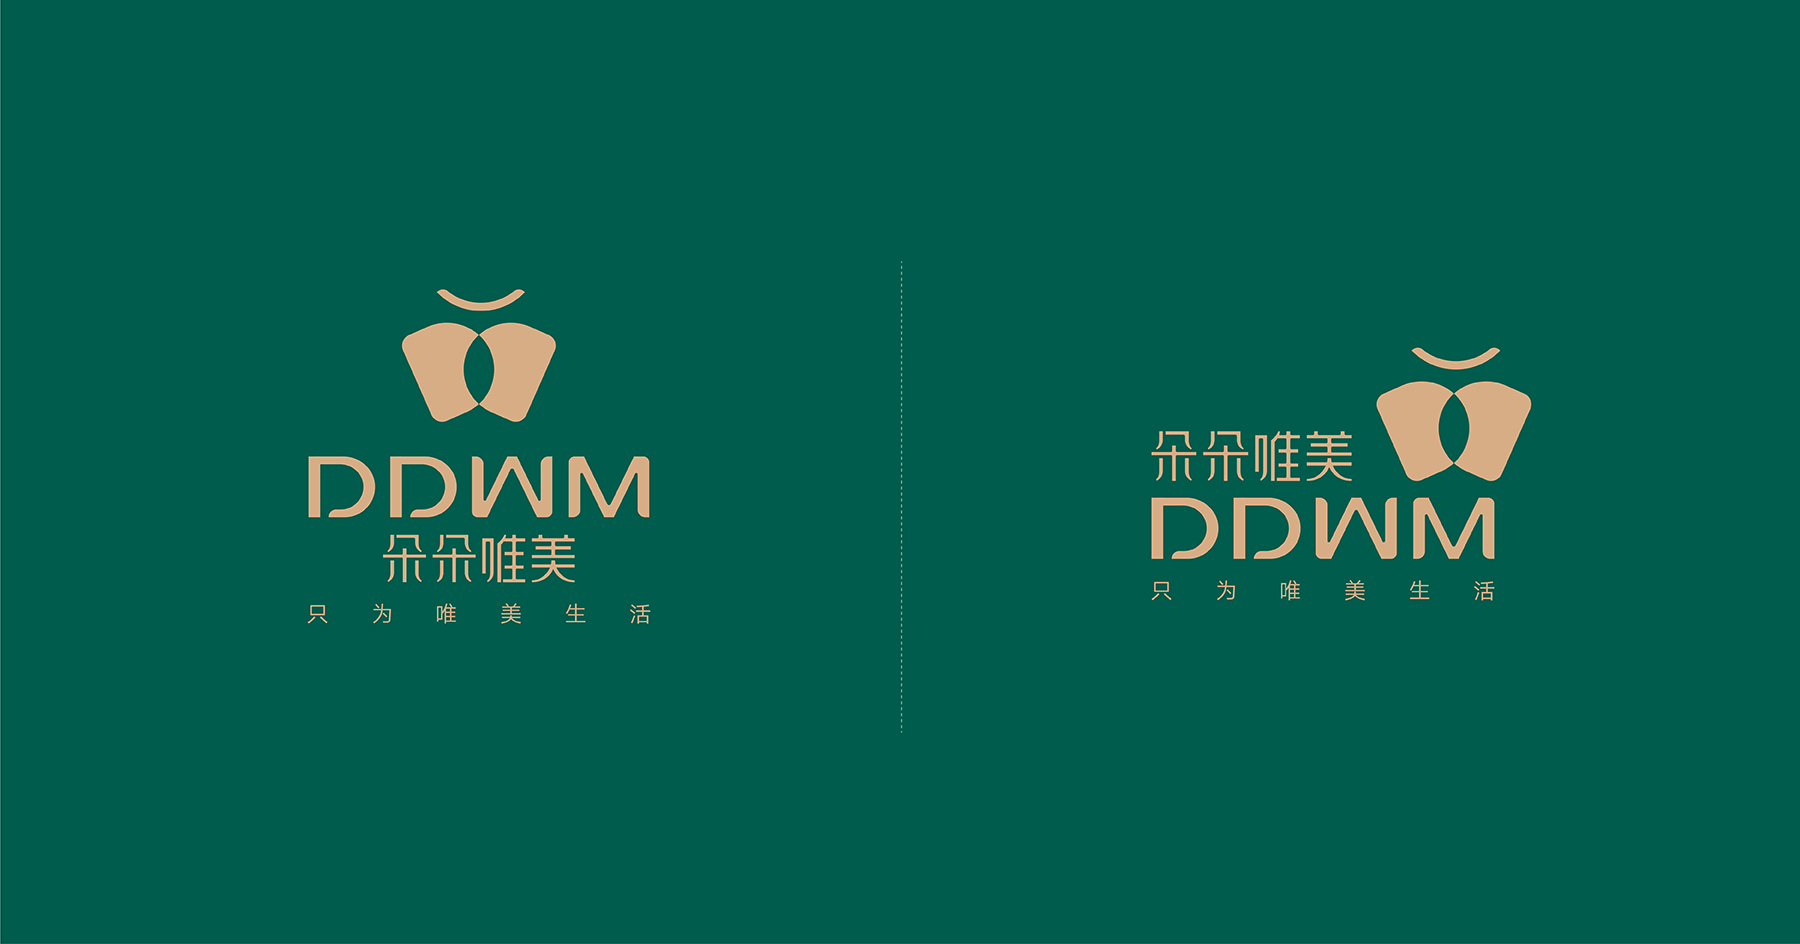 DDWM-09.jpg